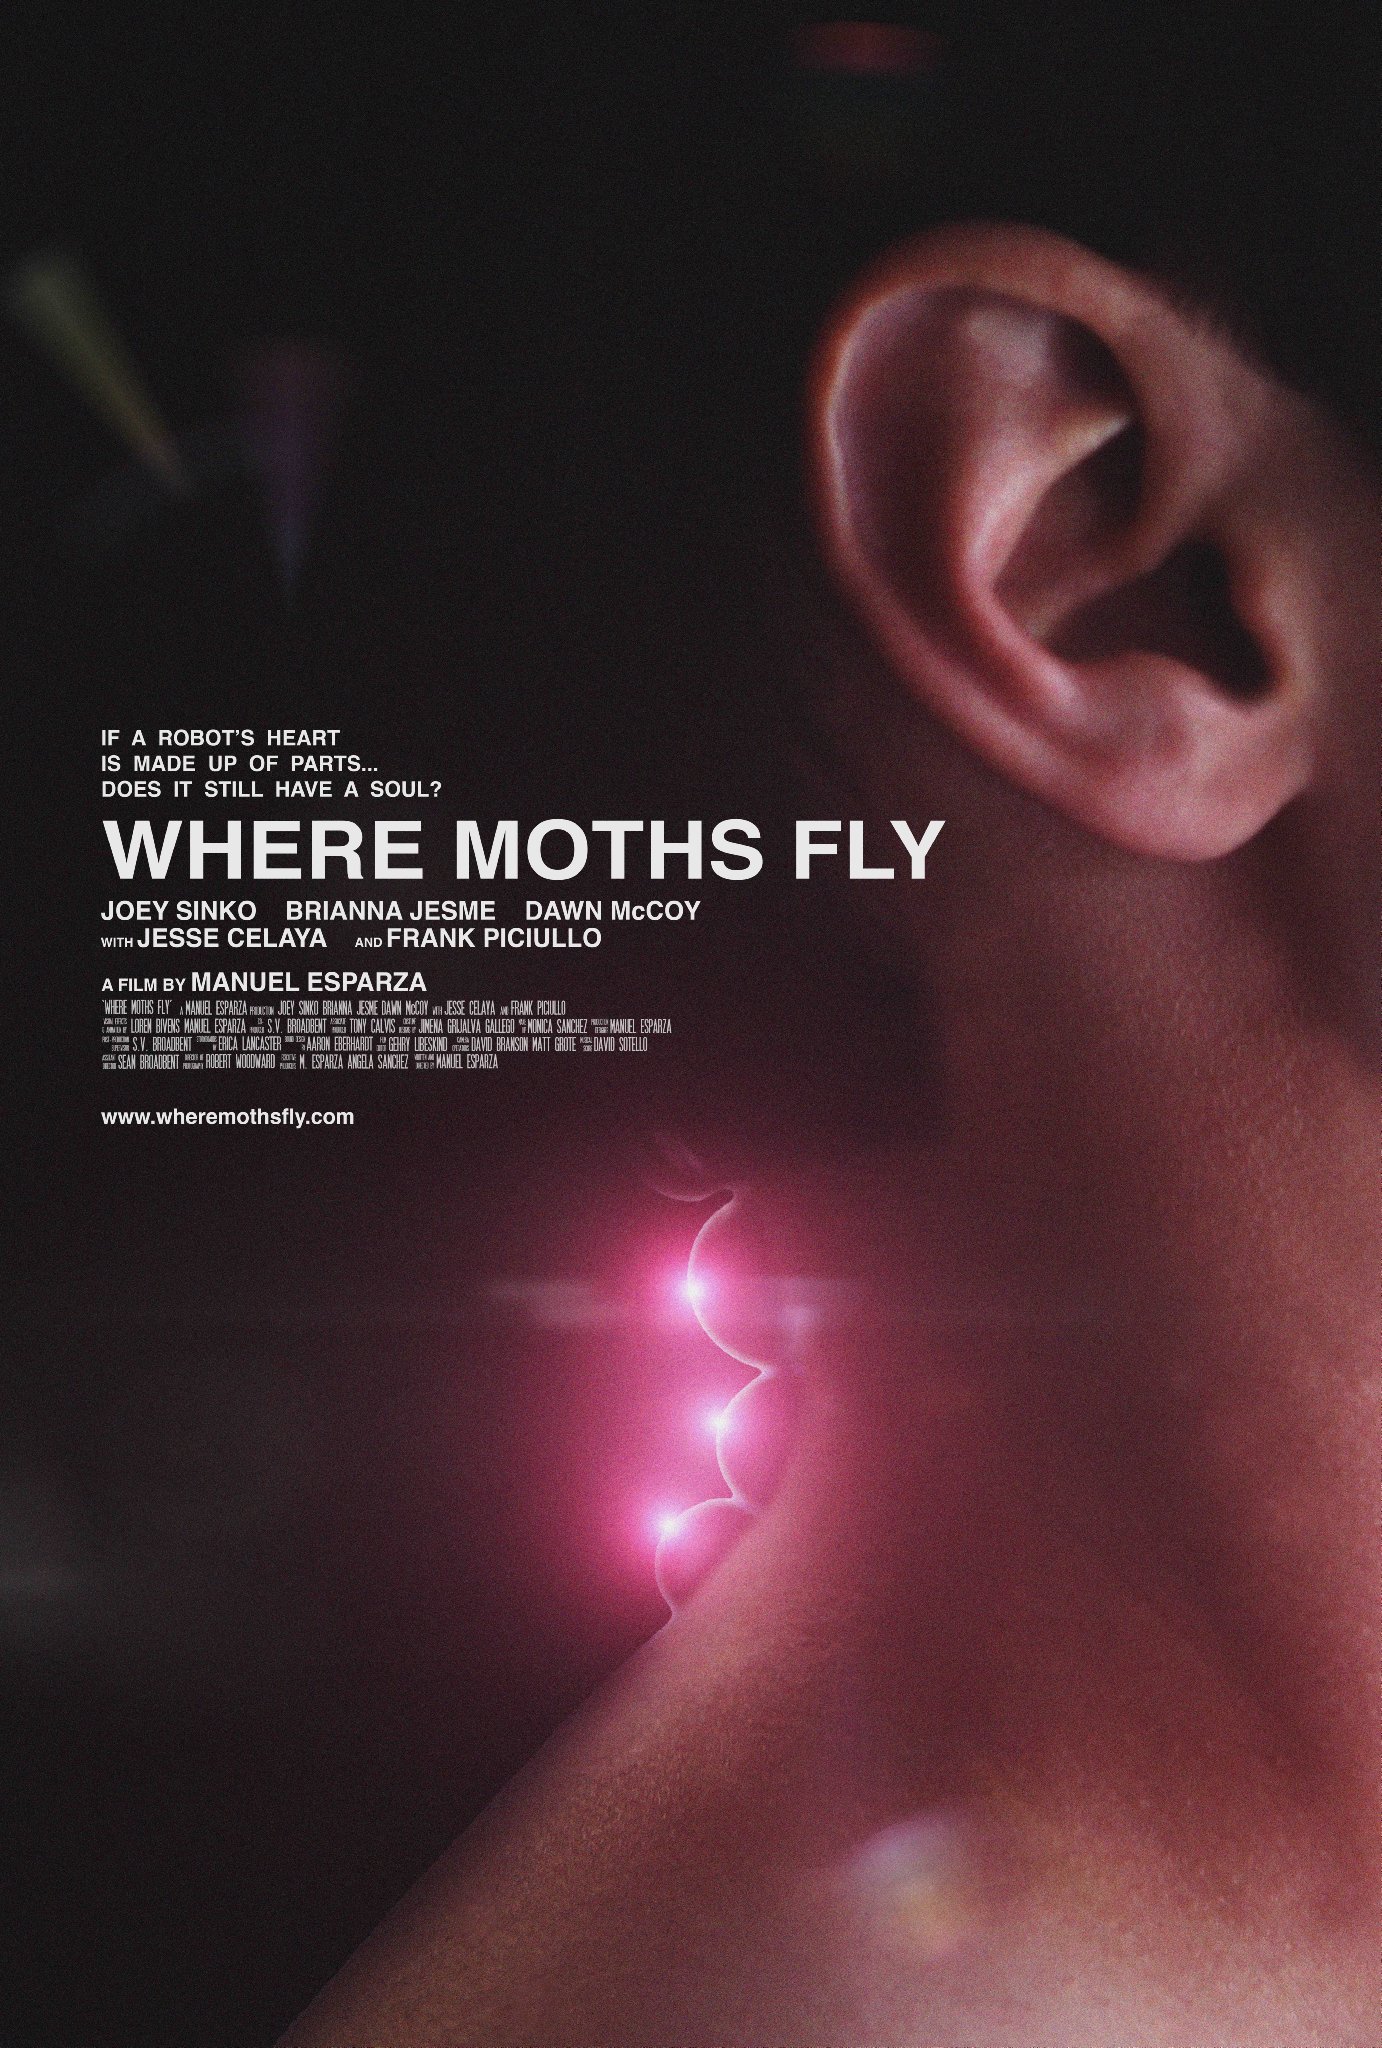 Фото - Where Moths Fly: 1382x2048 / 556 Кб